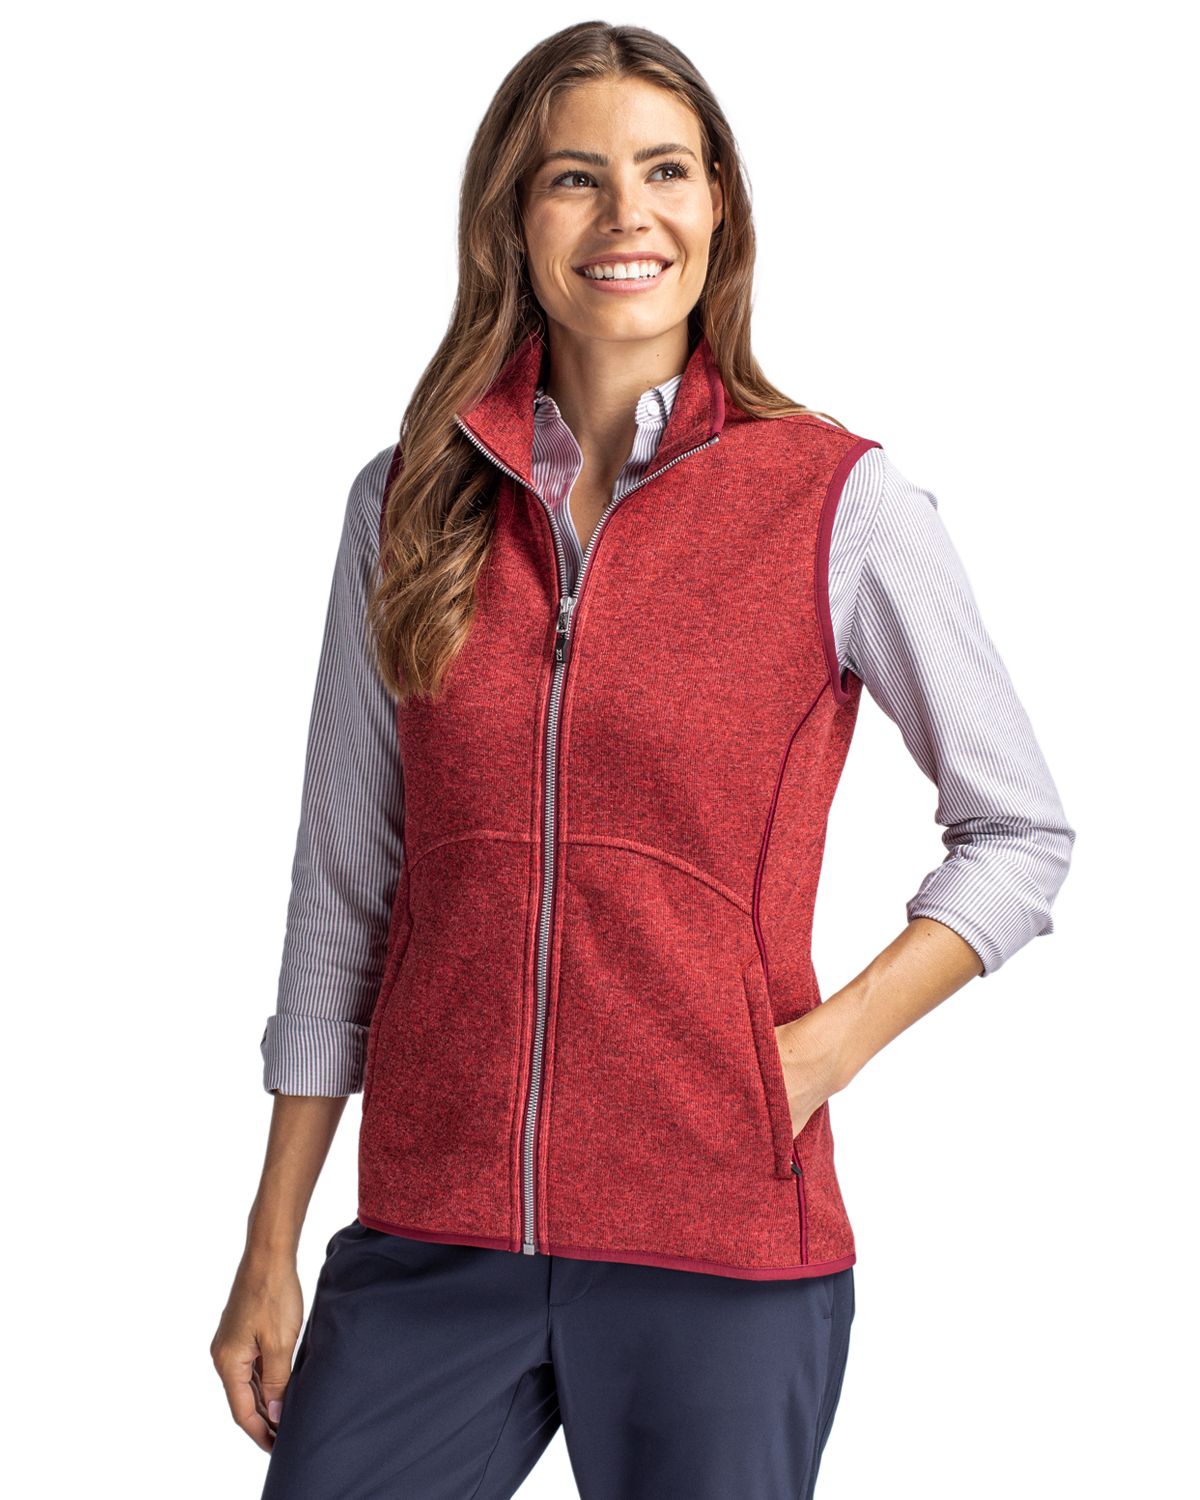 Women's Mainsail Women Sweater Knit Full Zip Vest - Cardinal red heather